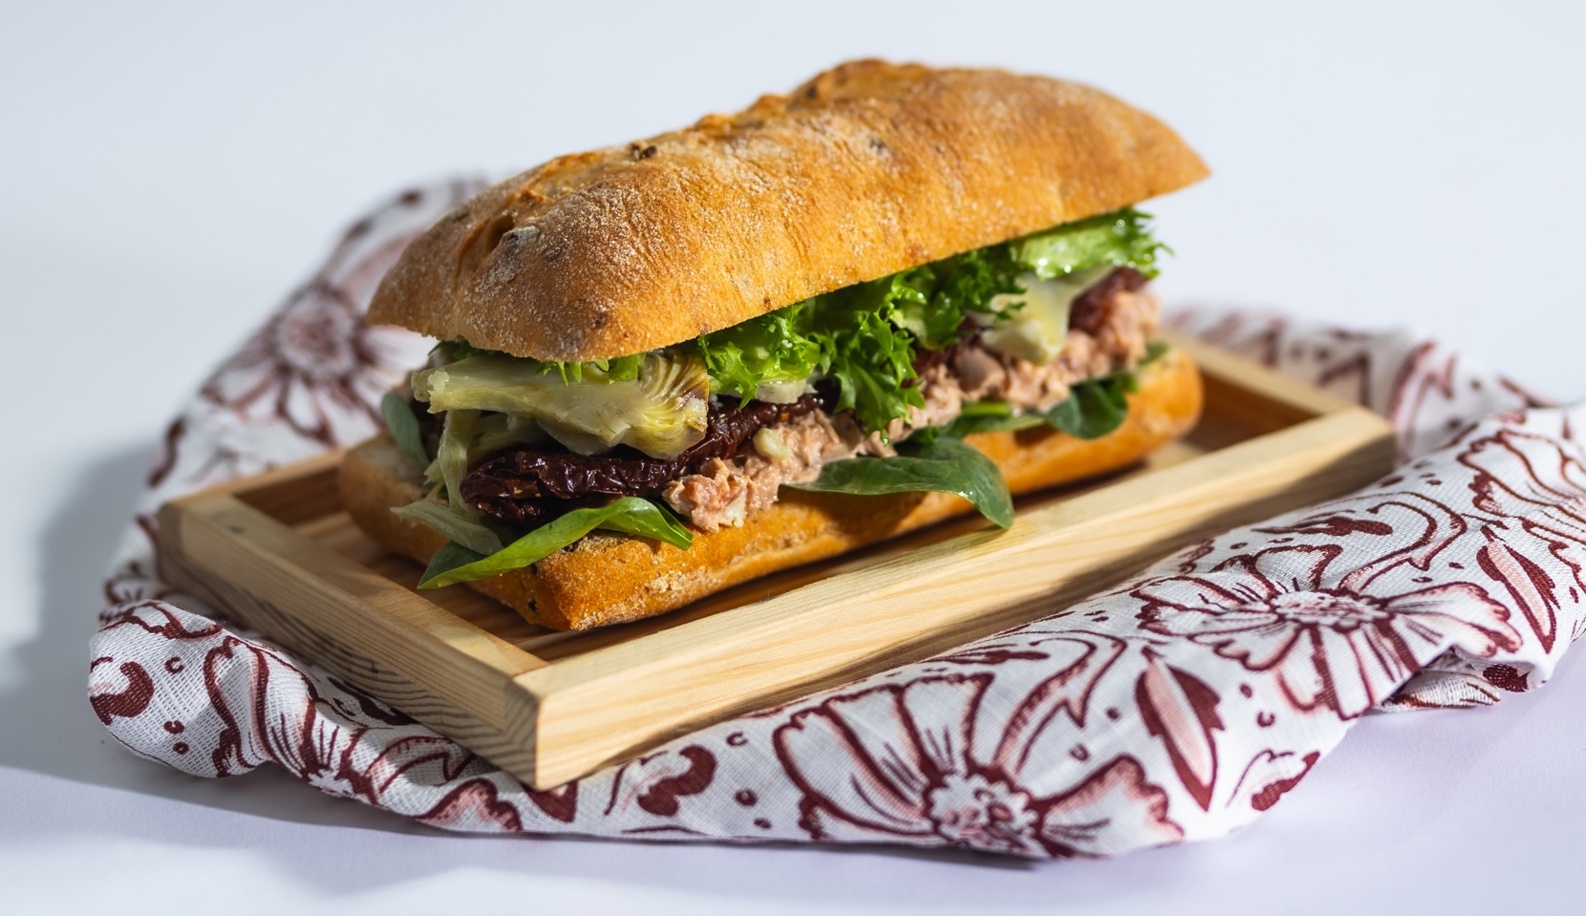 Tonhalkrémes-paradicsomos ciabatta szendvics